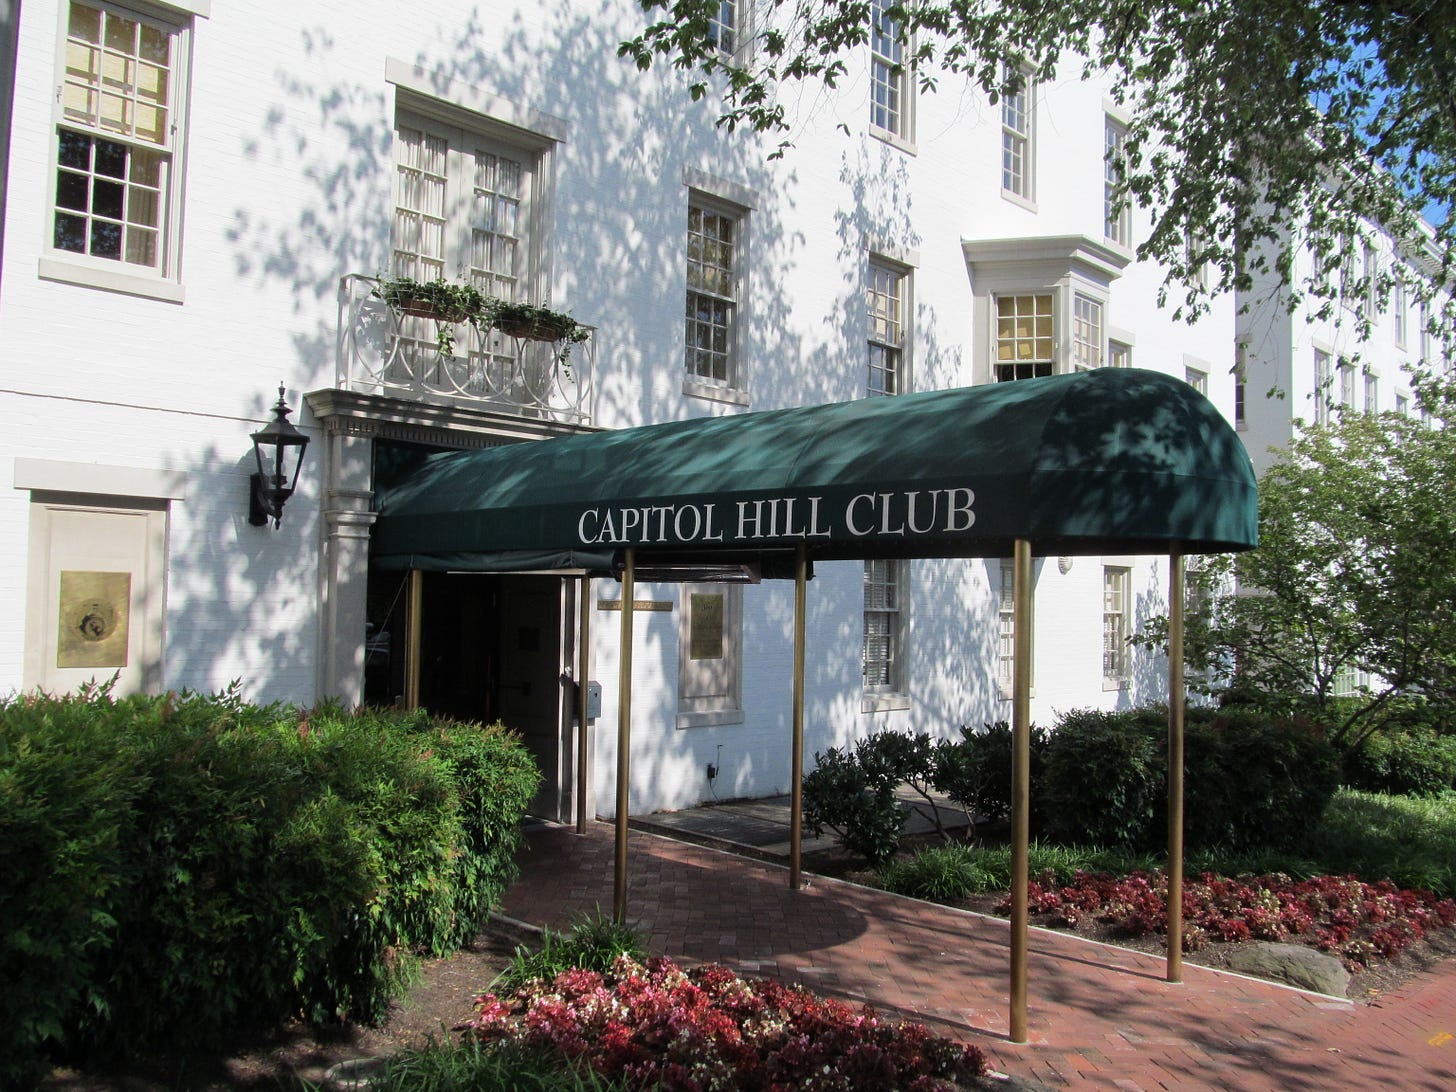 Capitol Hill Club - Wikipedia